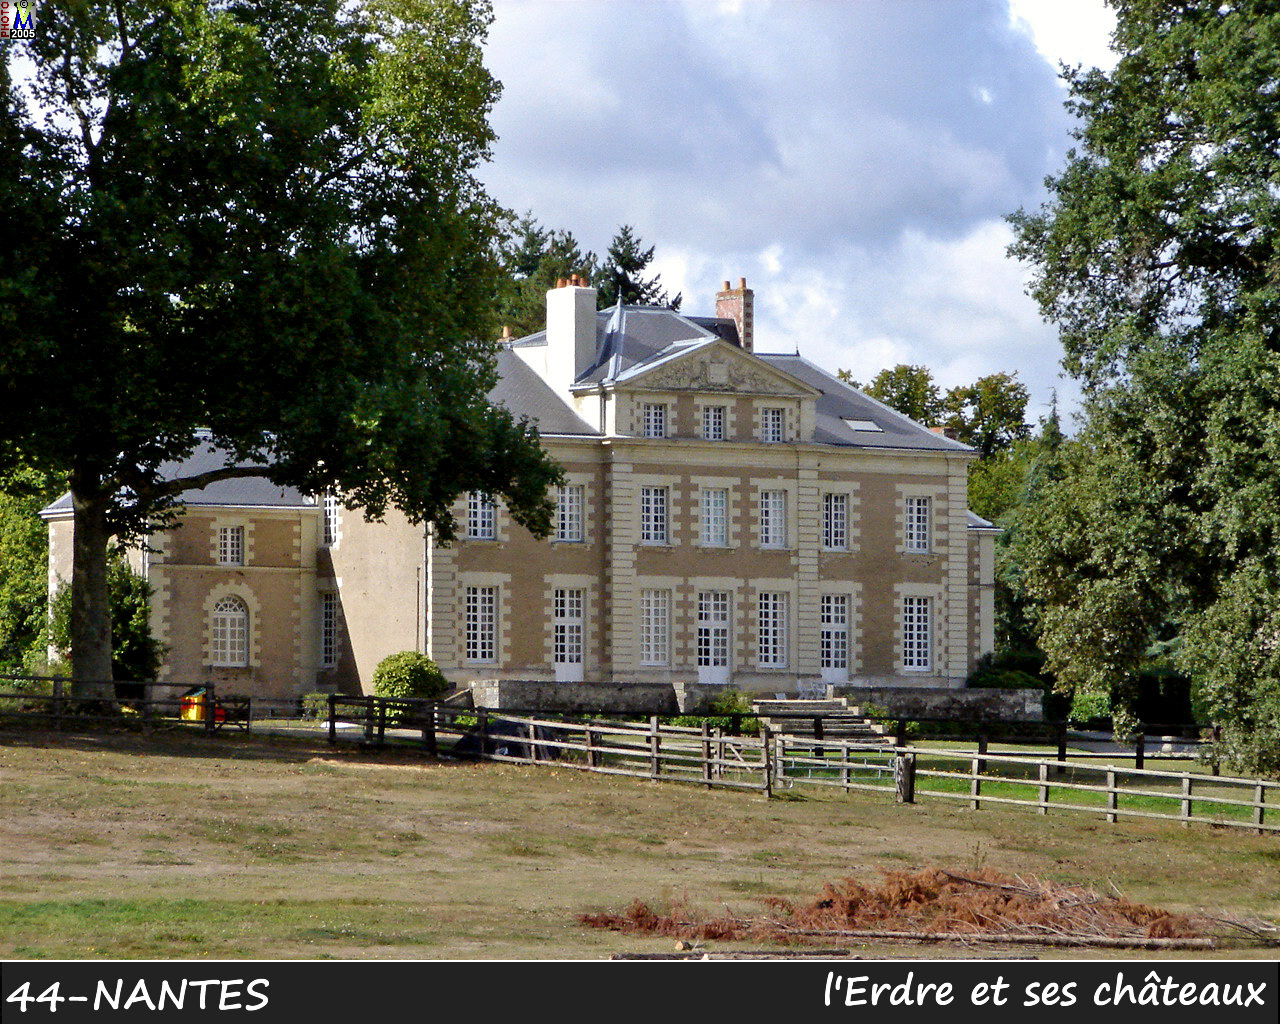 44NANTES_erdre-chateau_108.jpg